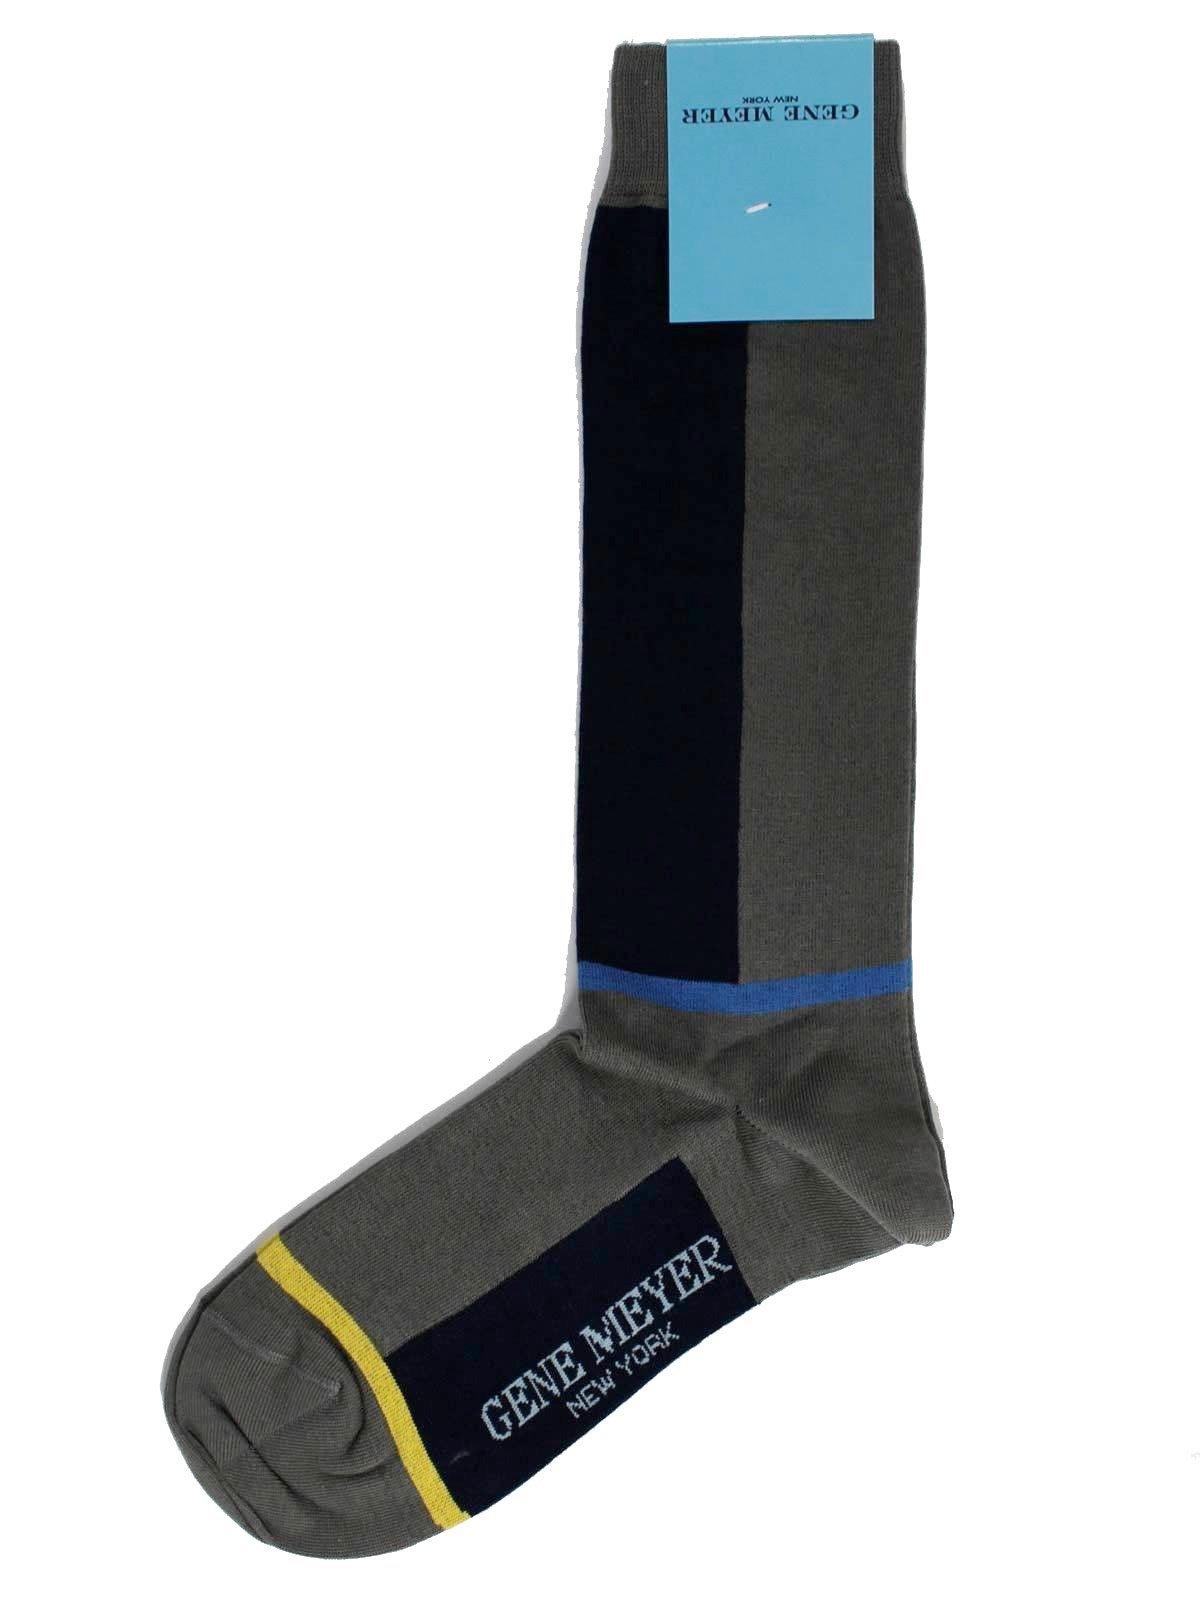 Gene Meyer Socks Gray Black Blue Stripes